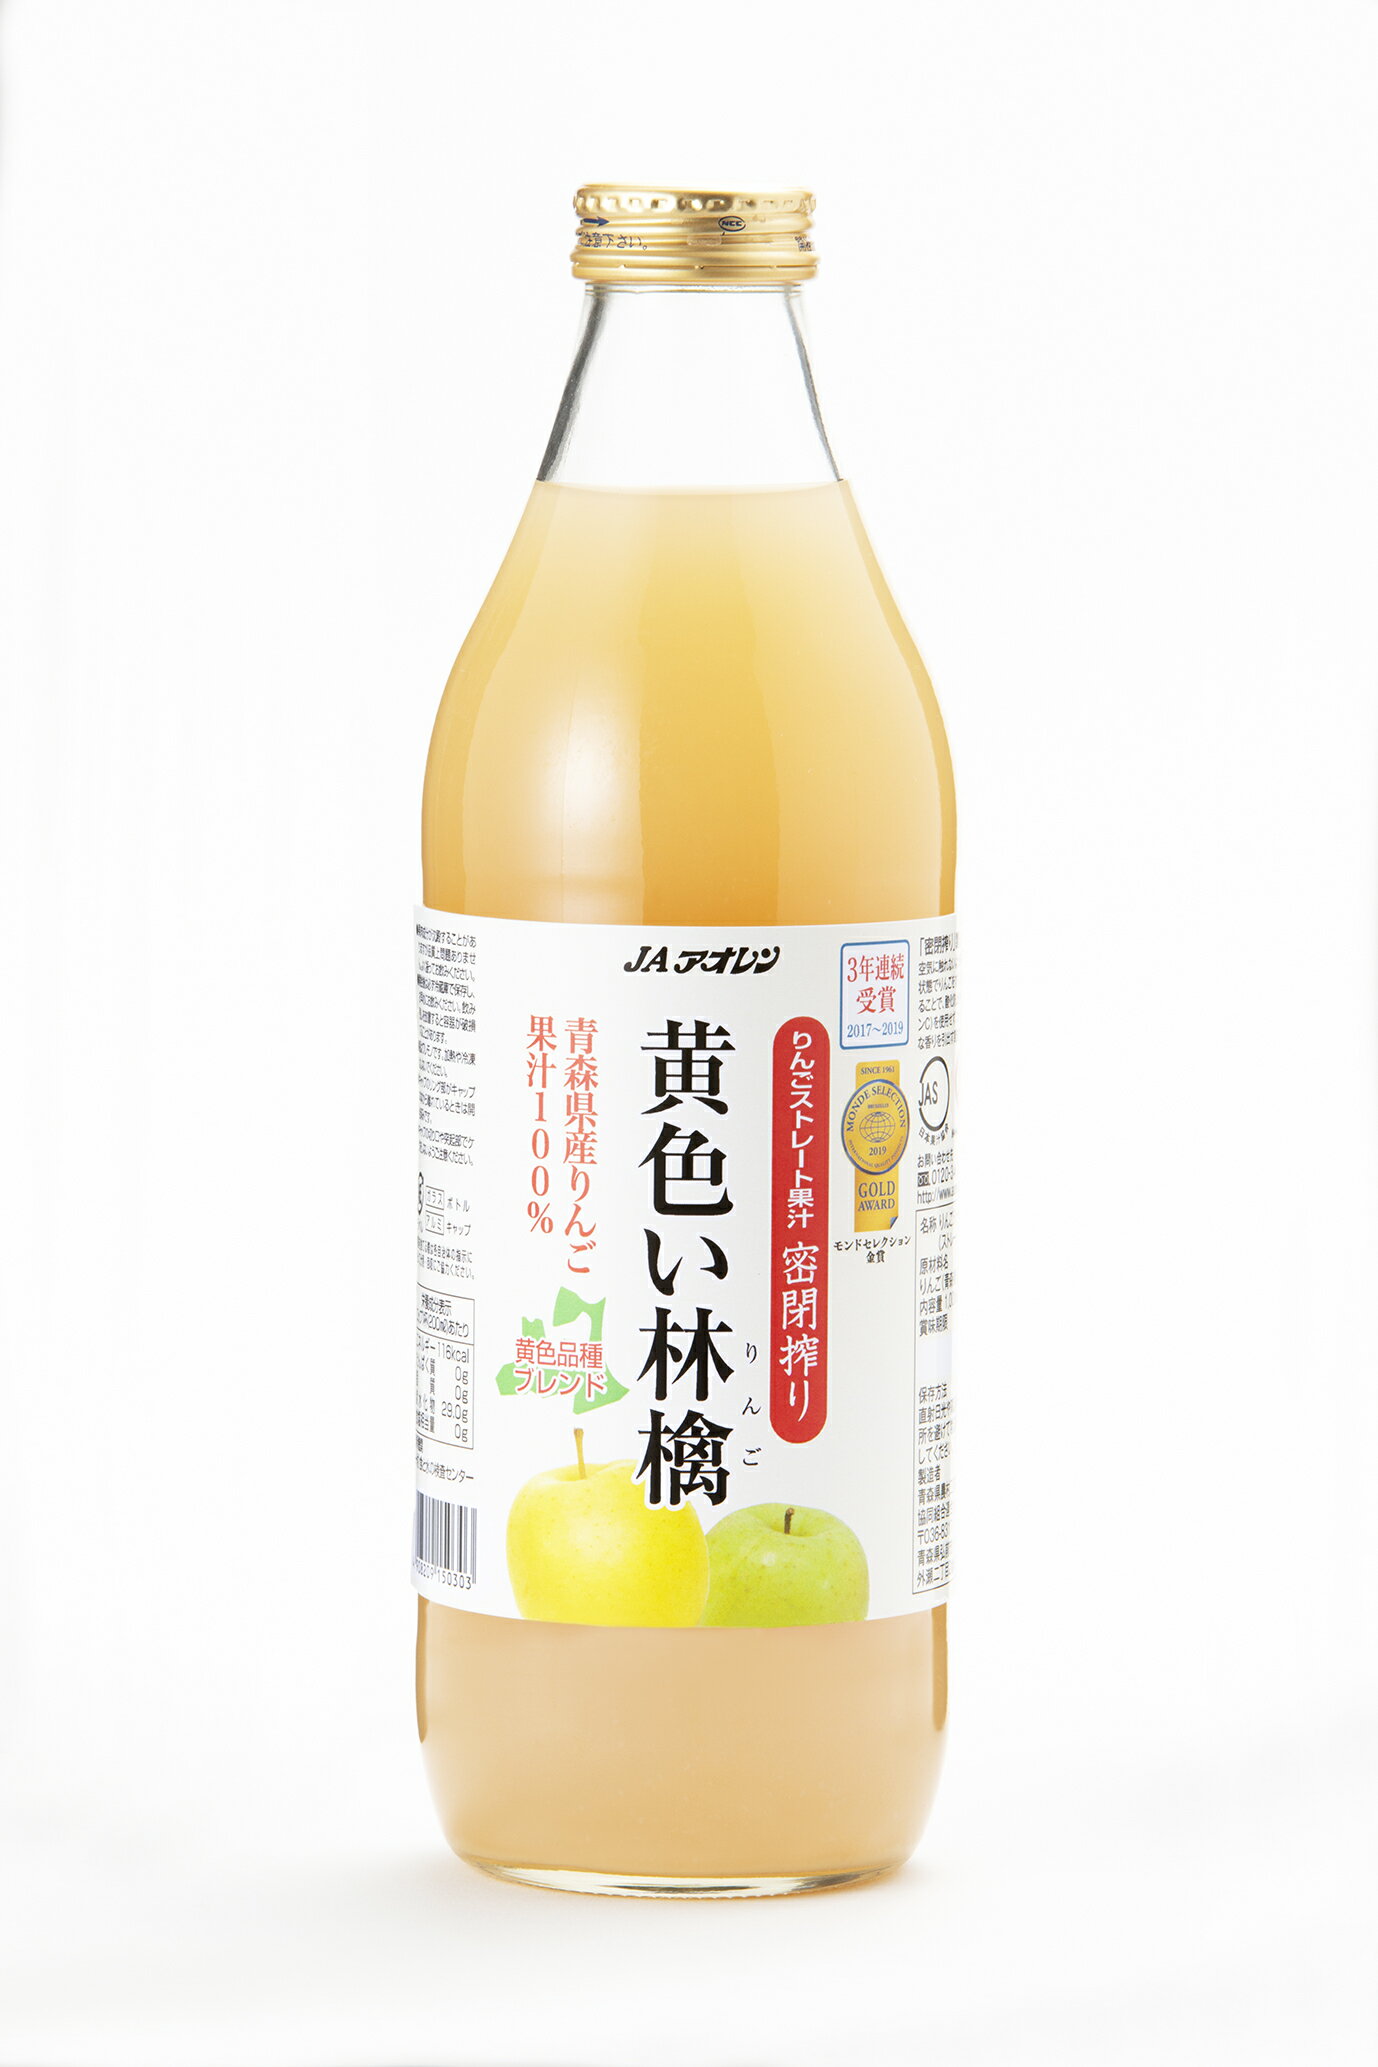 青森りんごジュース黄色い林檎1000ml瓶×6本入JAアオレンメーカー直営店【送料無料】